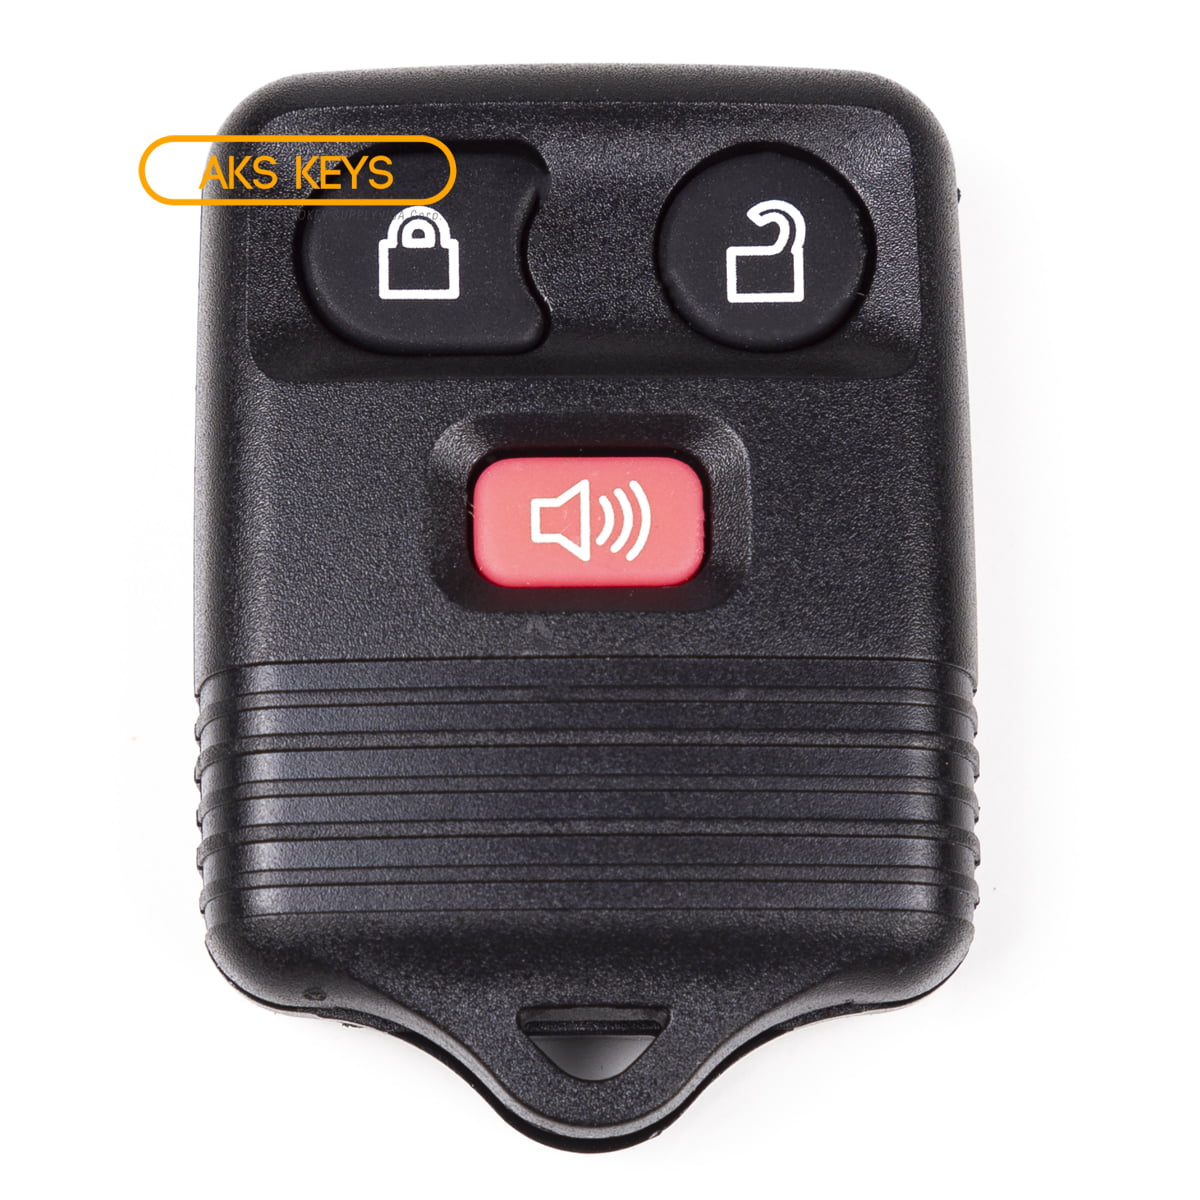 keyless remote Ford Contour control car key fob control entry fab 1998 1999 2000 